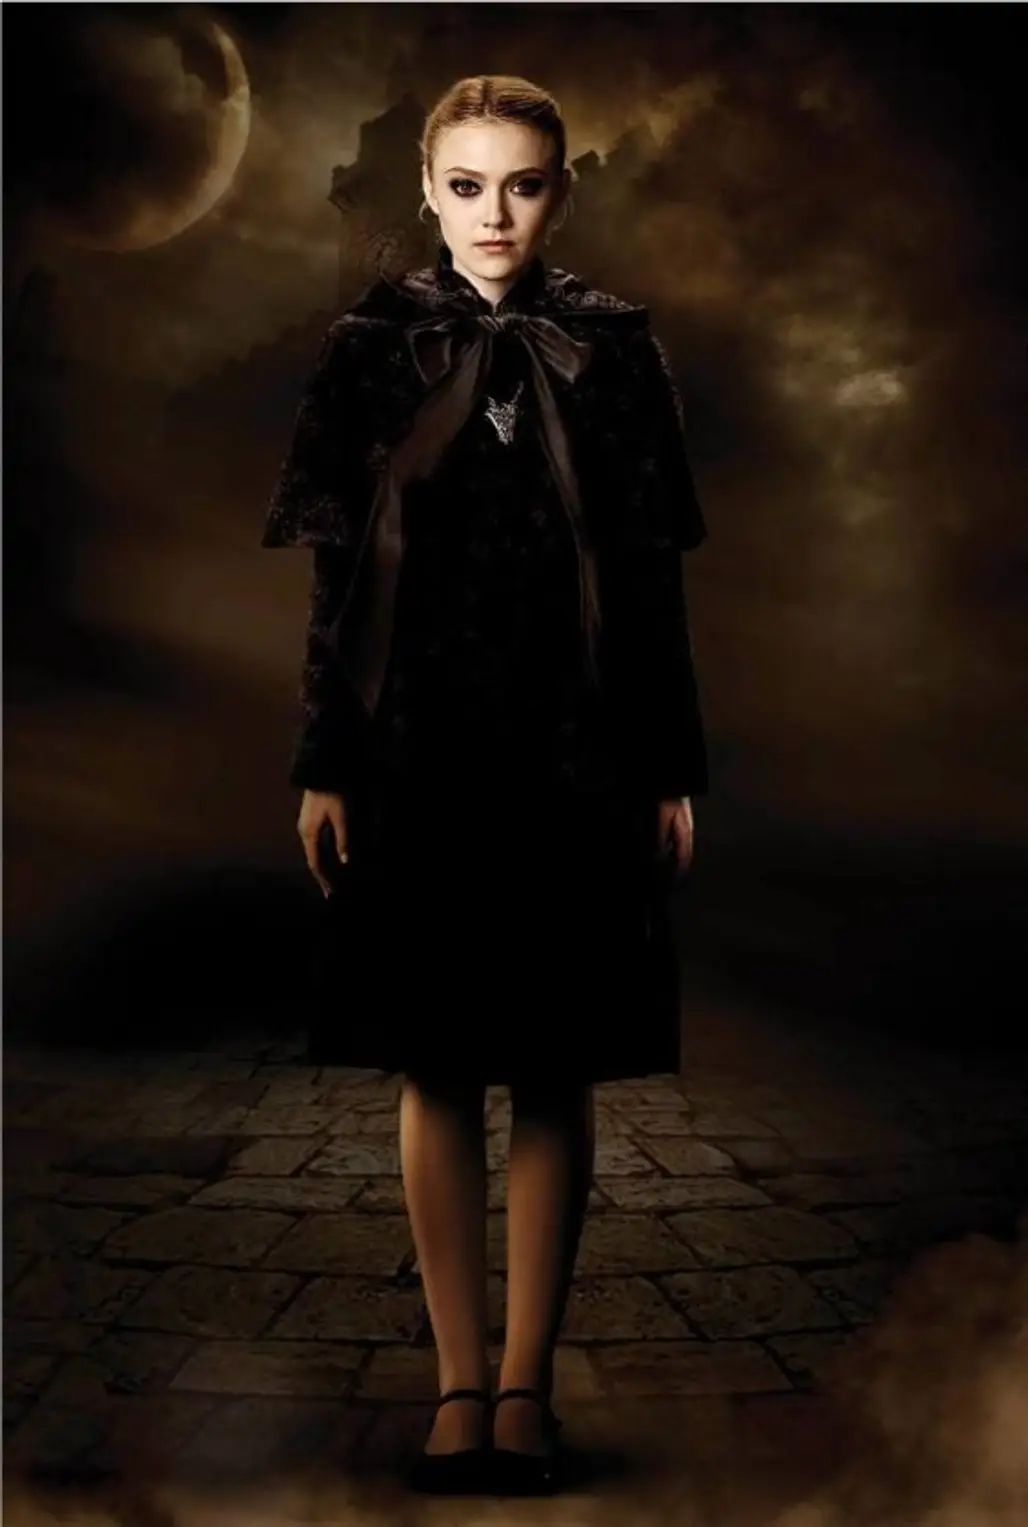 Dakota Fanning as Jane in the Twilight Saga